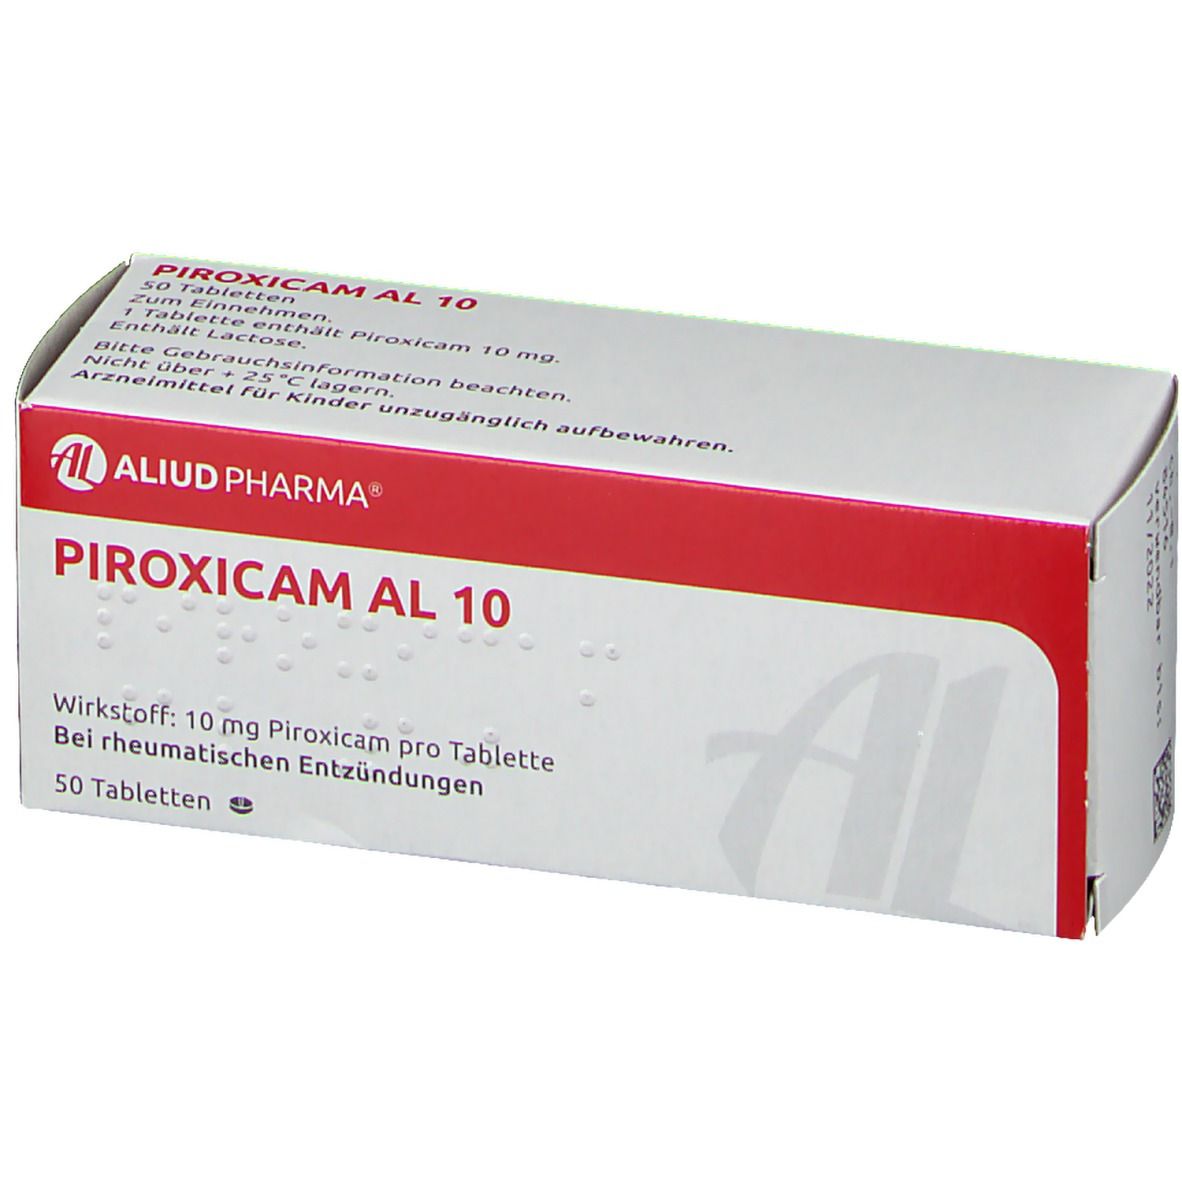 Piroxicam AL 10